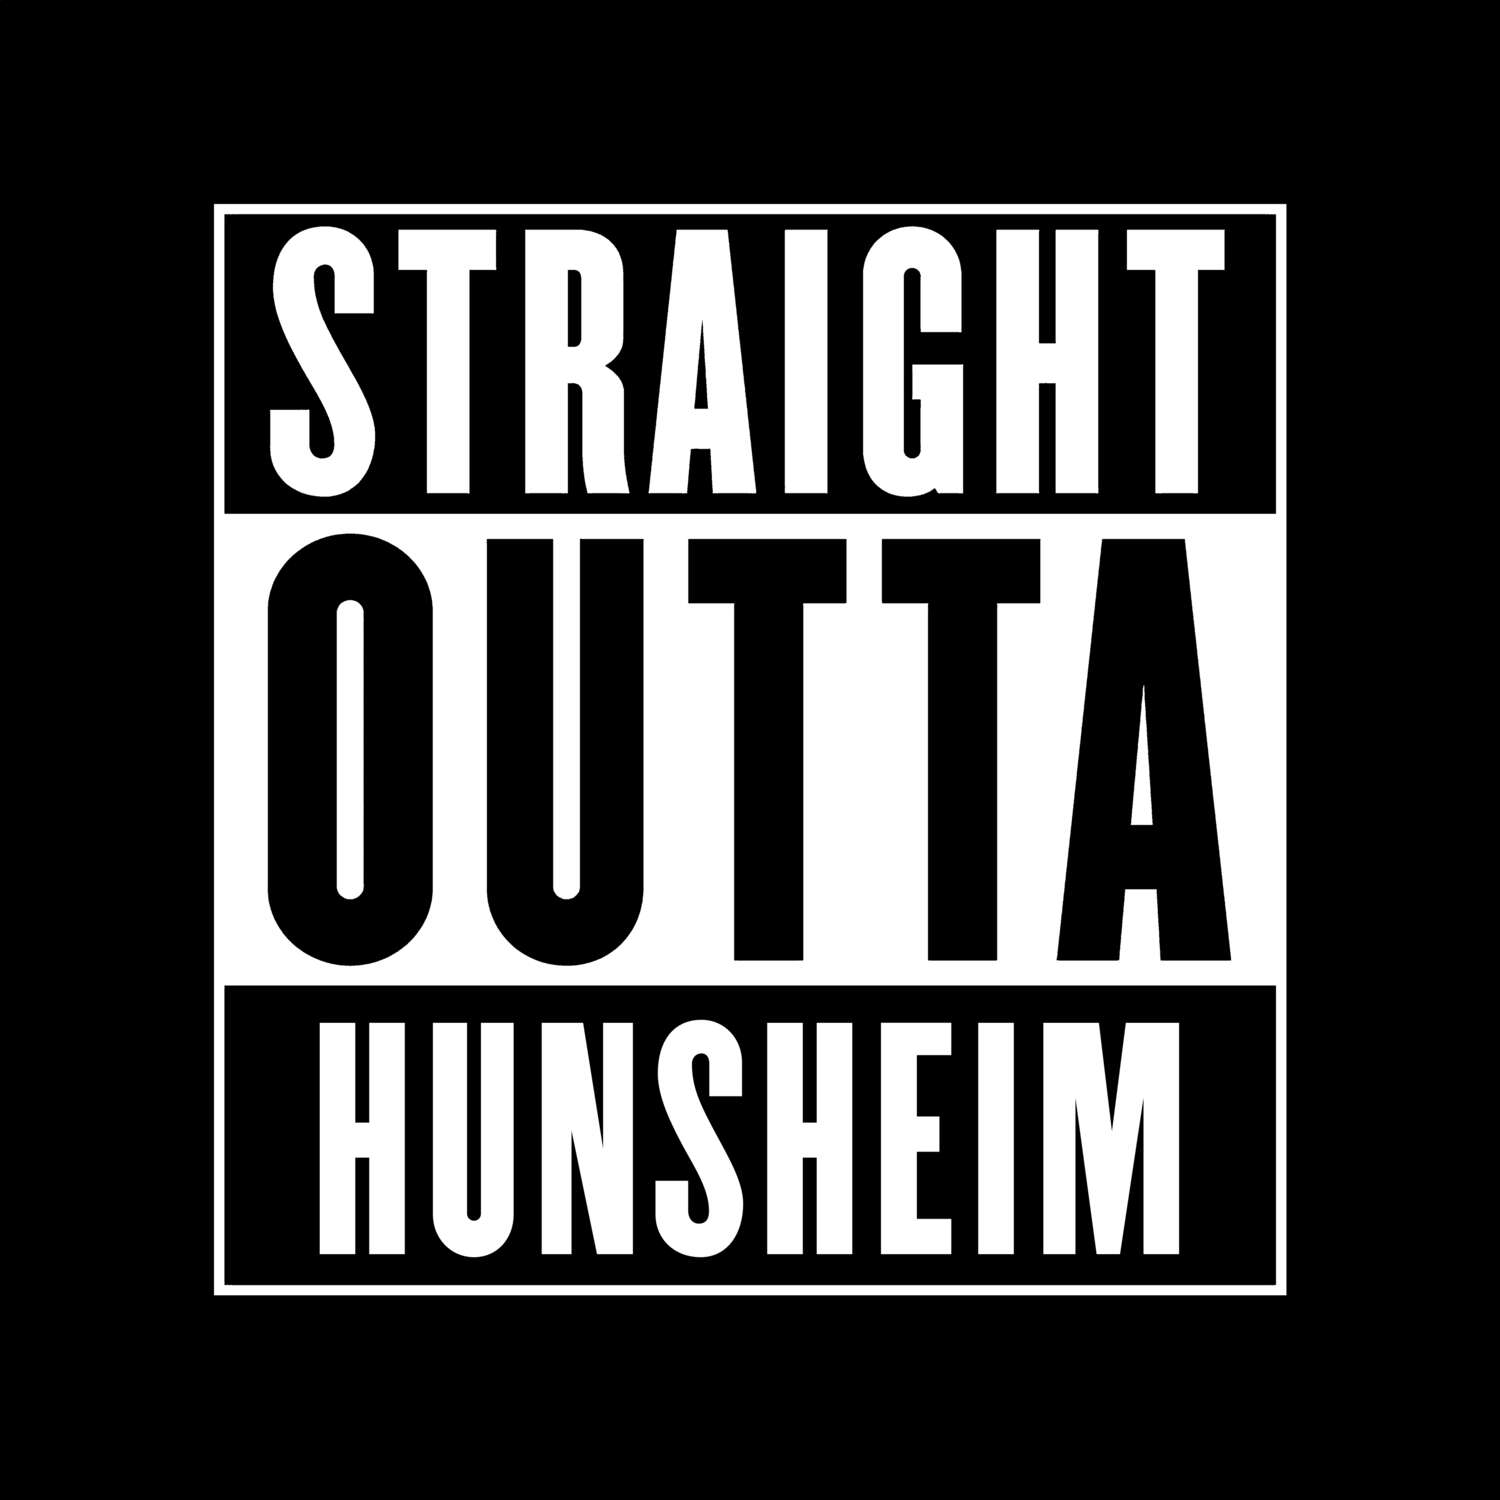 Hunsheim T-Shirt »Straight Outta«